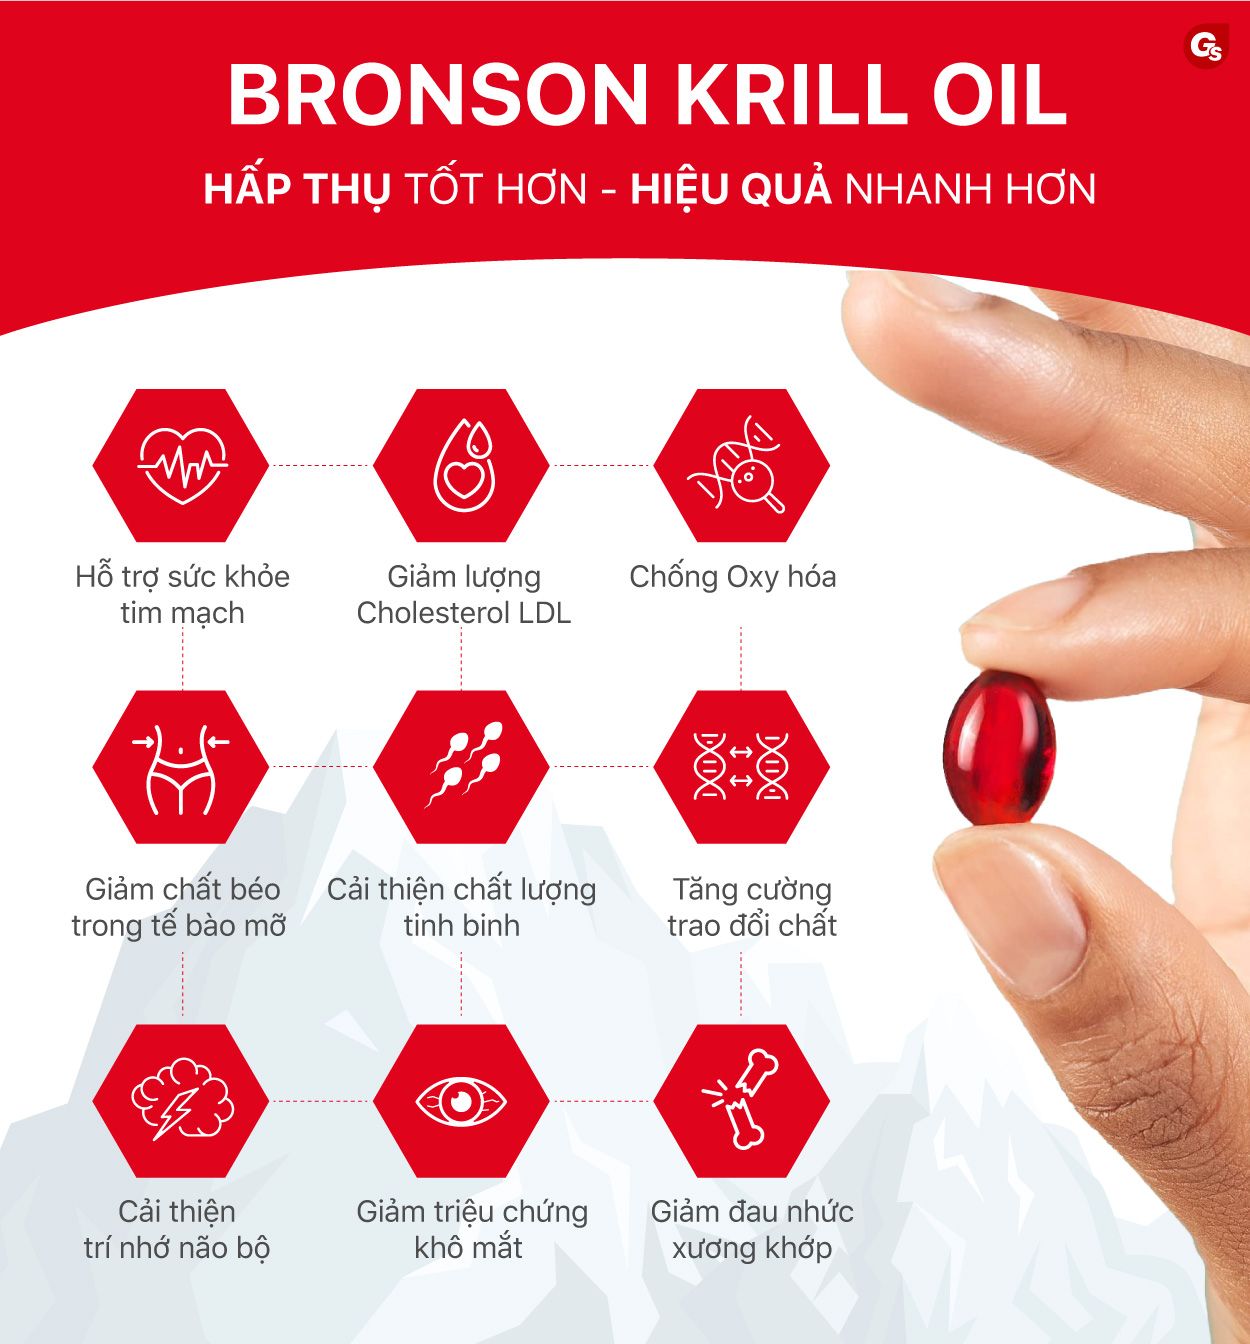 loi-ich-cua-dau-nhuyen-the-bronson-krill-oil